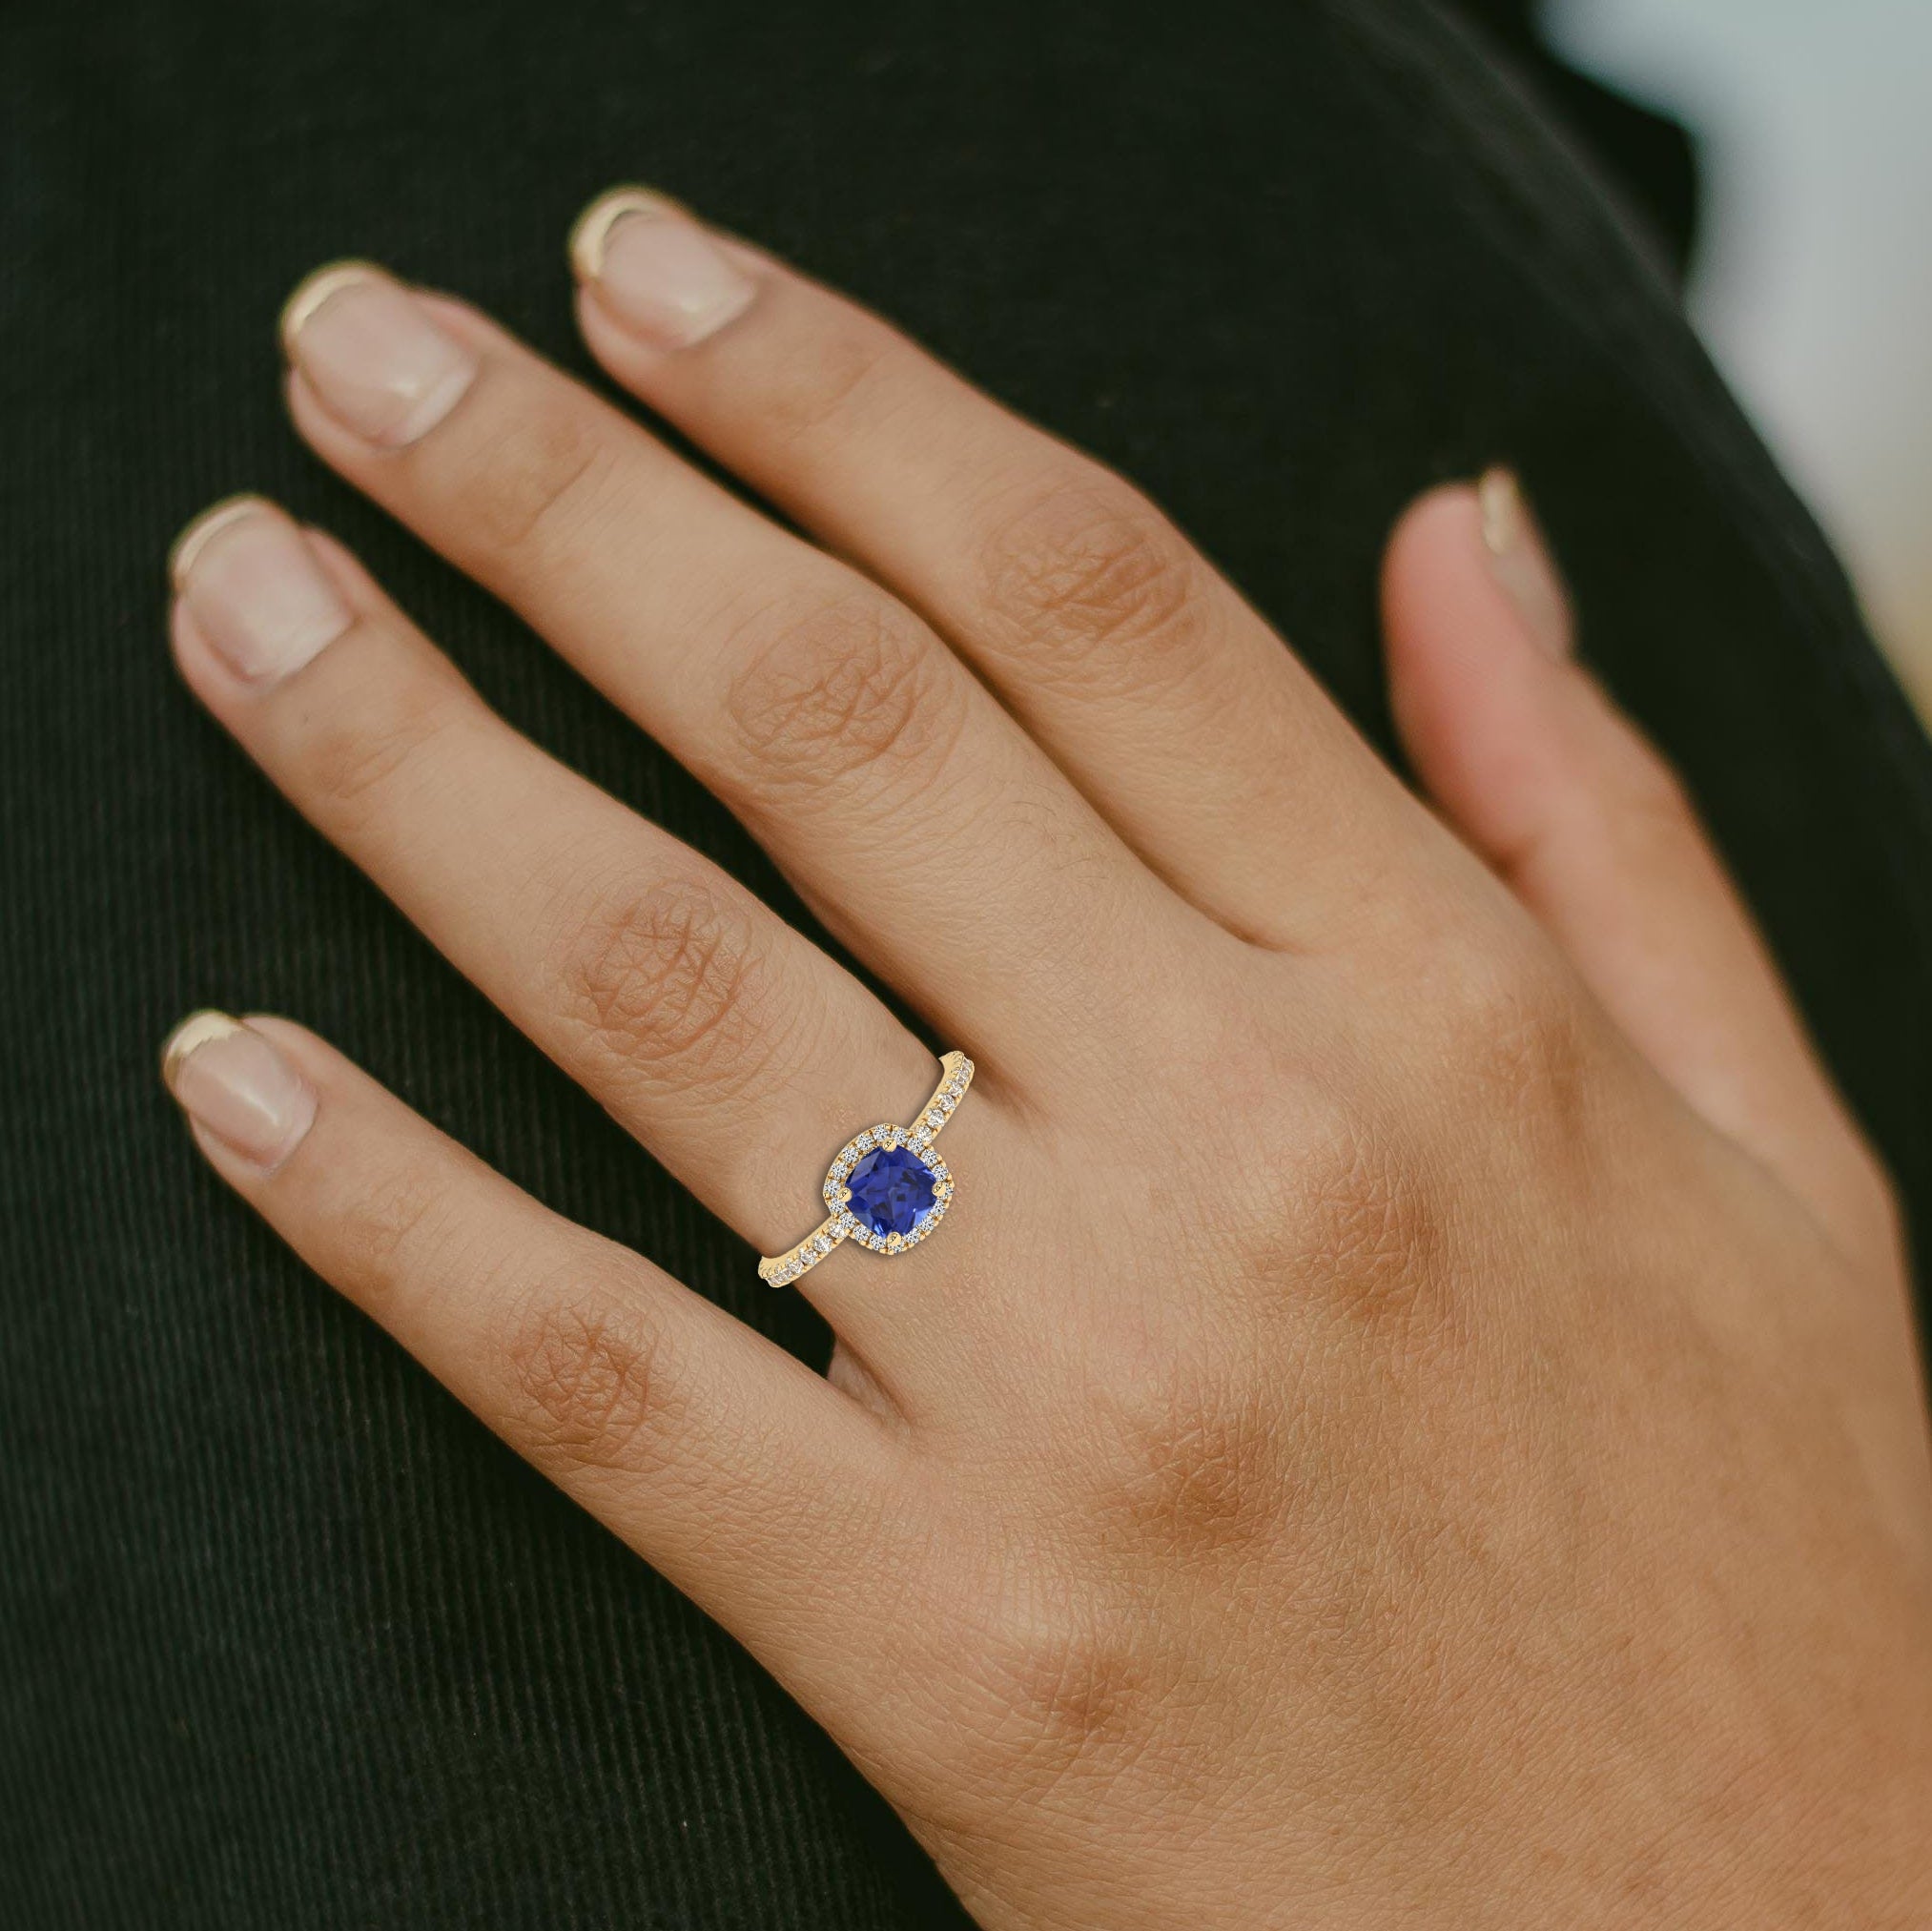 Cushion Cut Blue Sapphire Engagement Ring